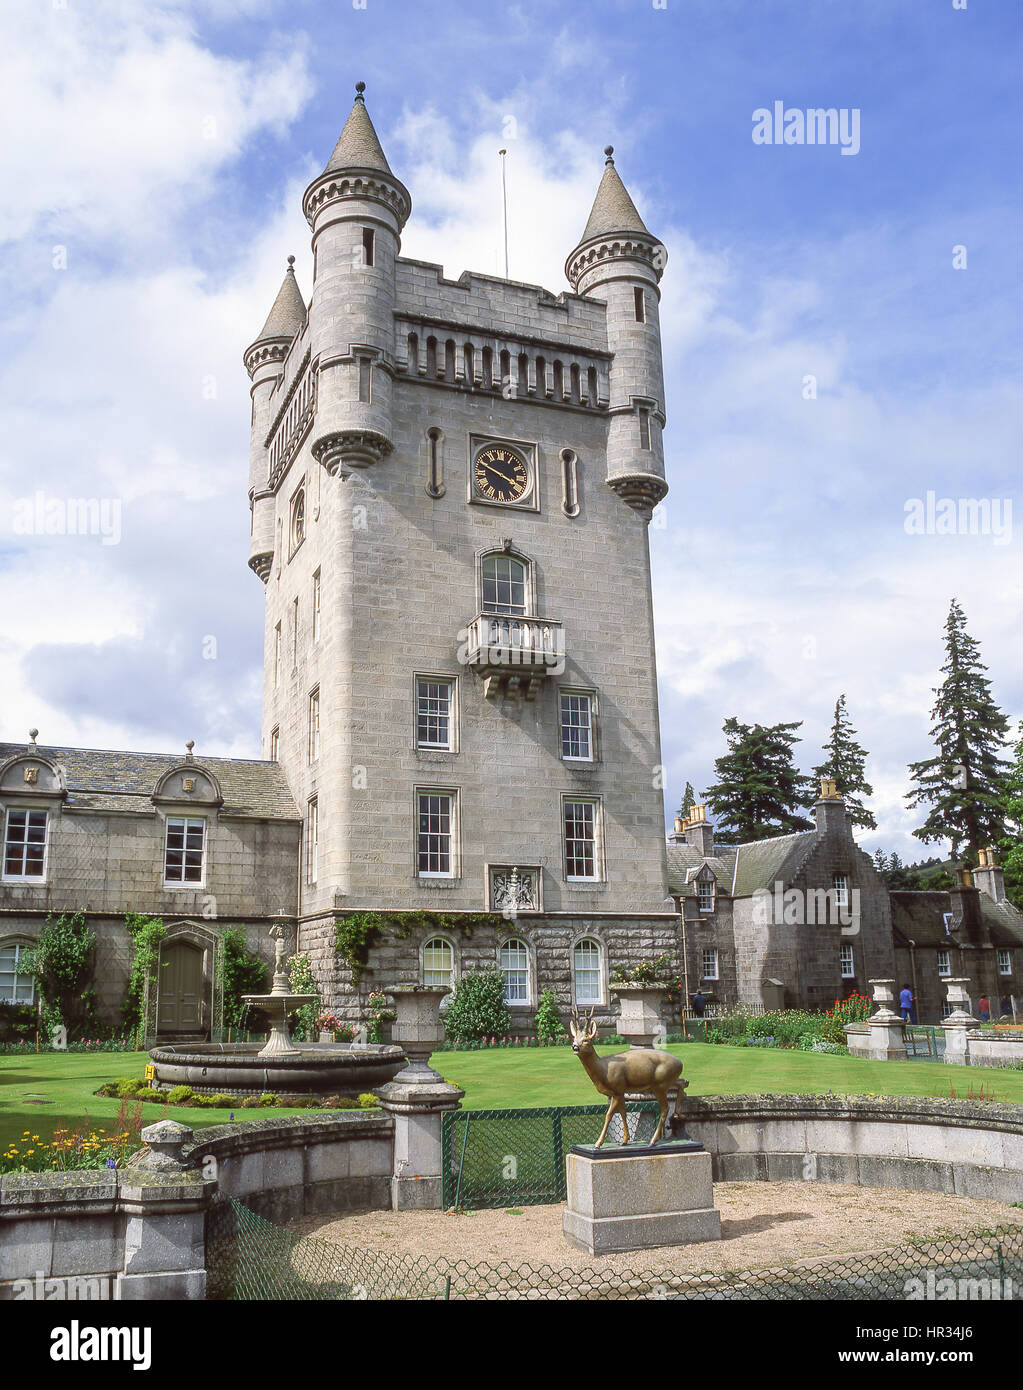 El castillo de Balmoral y jardines, Royal Deeside, aberdeenshire, Escocia, Reino Unido Foto de stock